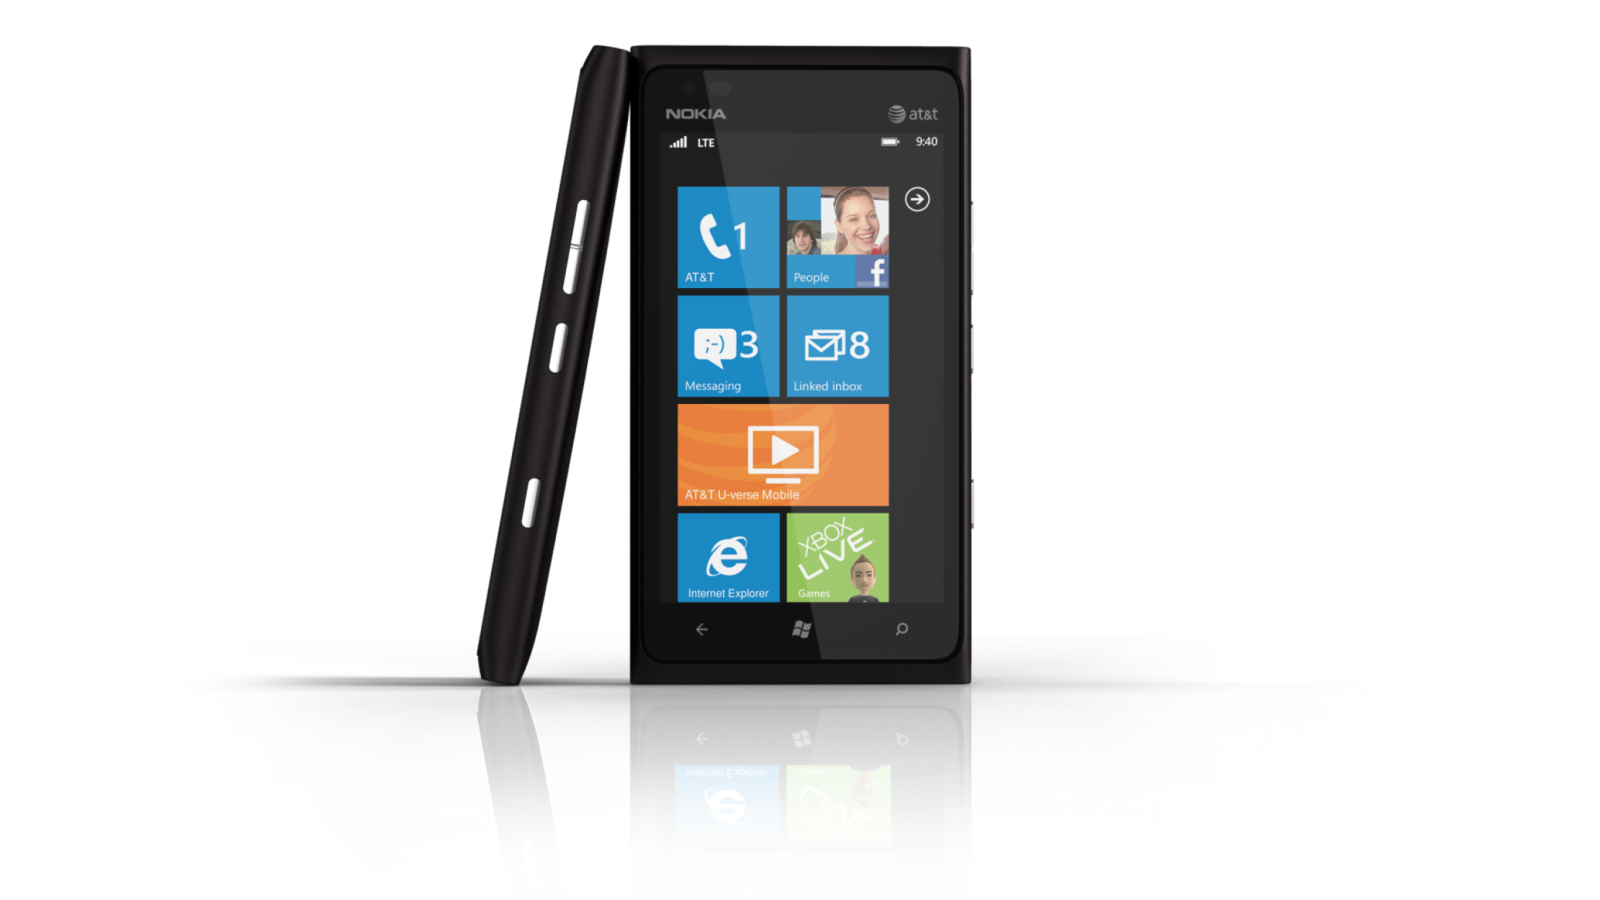 Windows Phone Nokia Lumia 900 wallpaper 1600x900